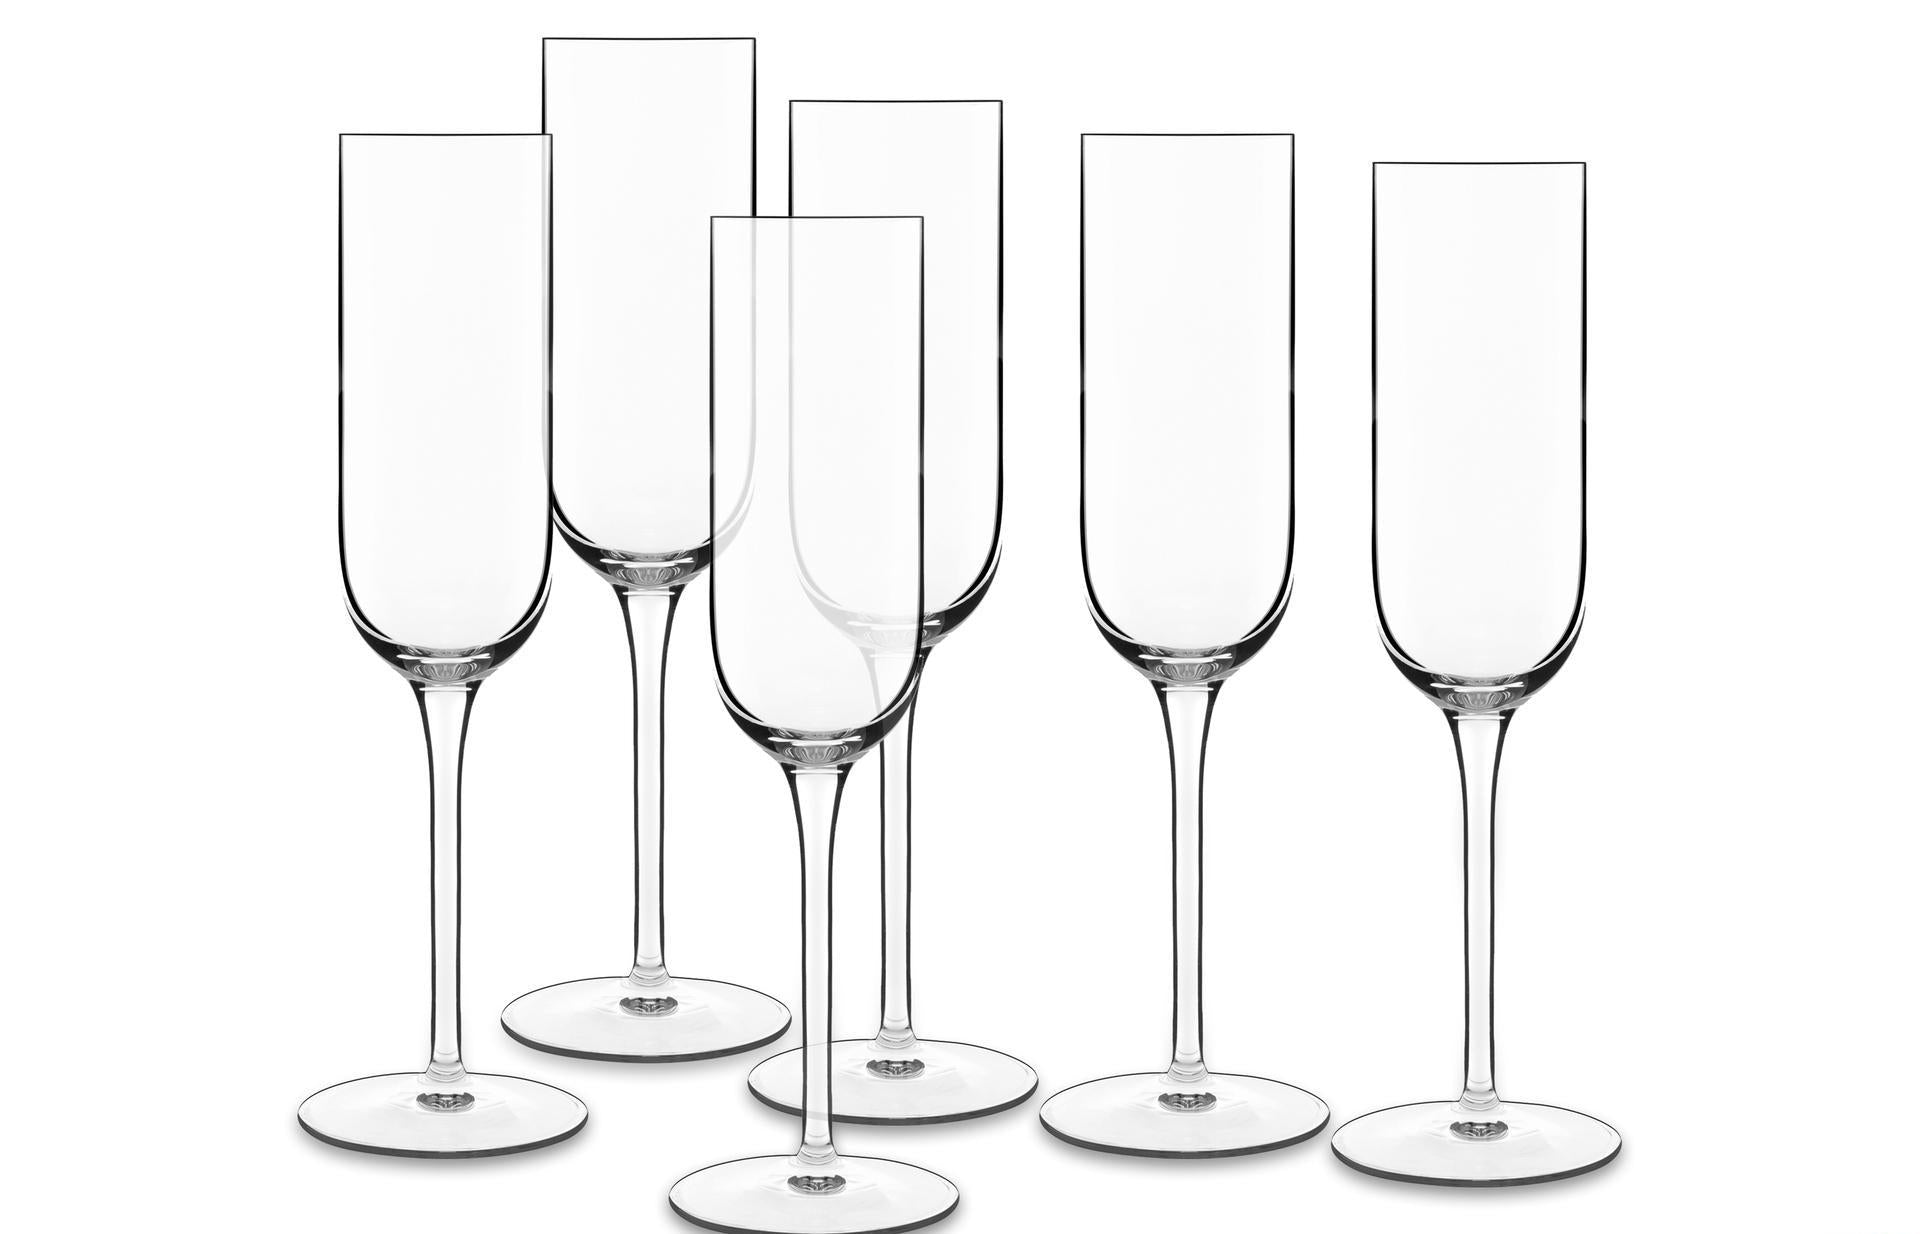 Luigi Bormioli Vinalia Champagne Glass Prosecco 21 Cl 6 kpl.